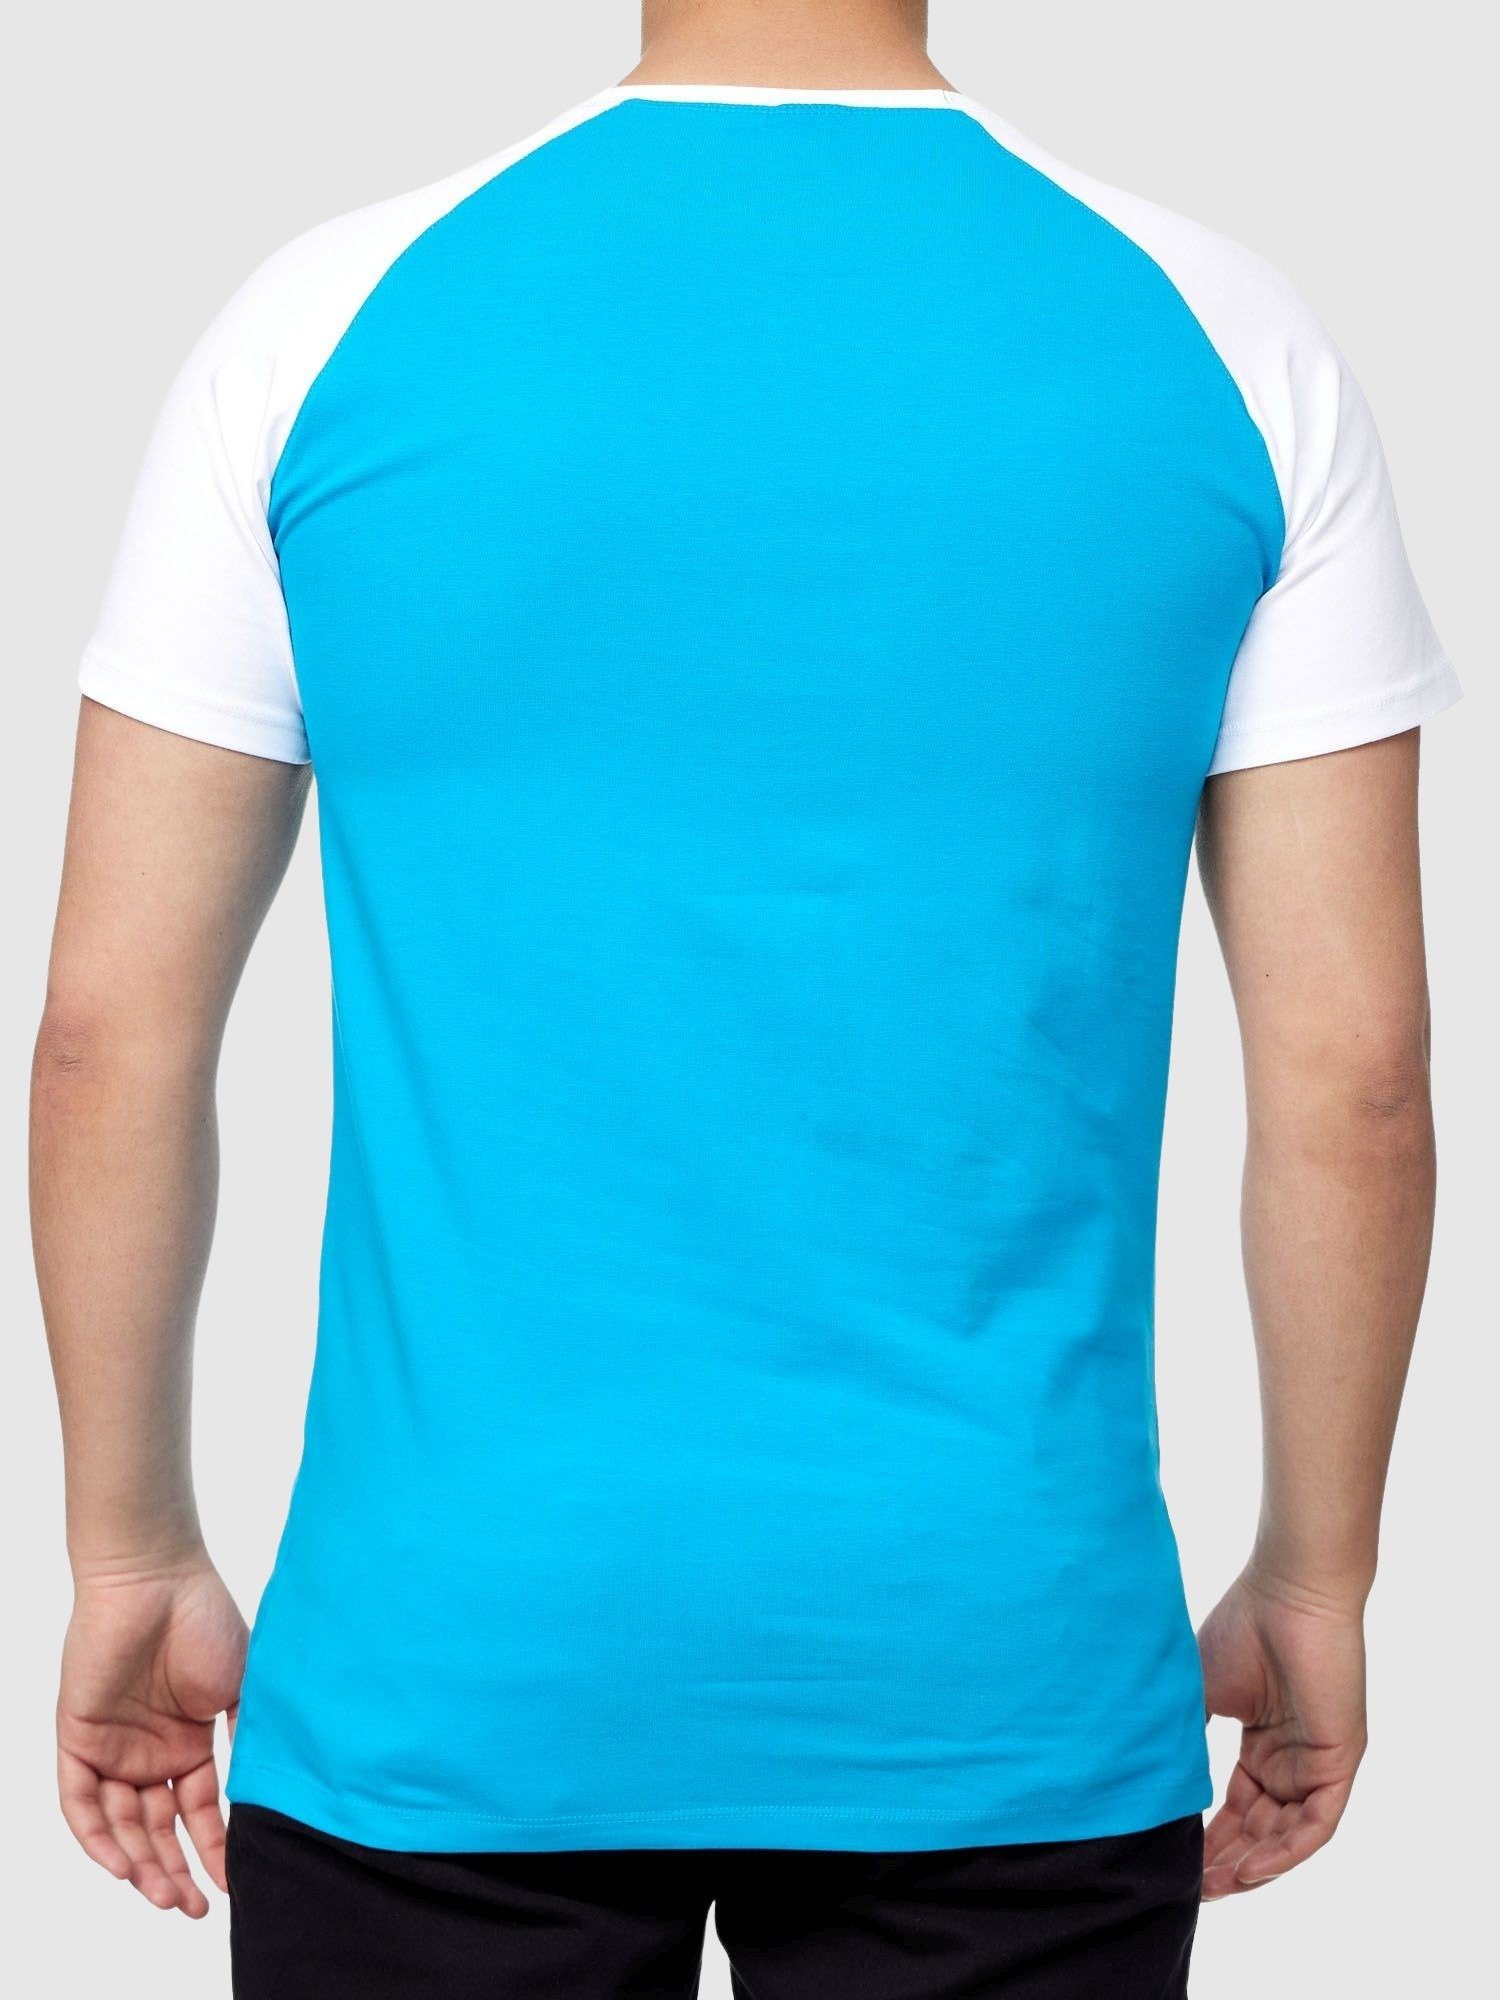 John Poloshirt T-Shirt Tee (Shirt Fitness Türkis T-Shirt Shirt Polo John Tshirt Polo Weiss Kayna Freizeit Tee, T Kurzarmshirt Herren 1-tlg) für Kayna Casual Männer